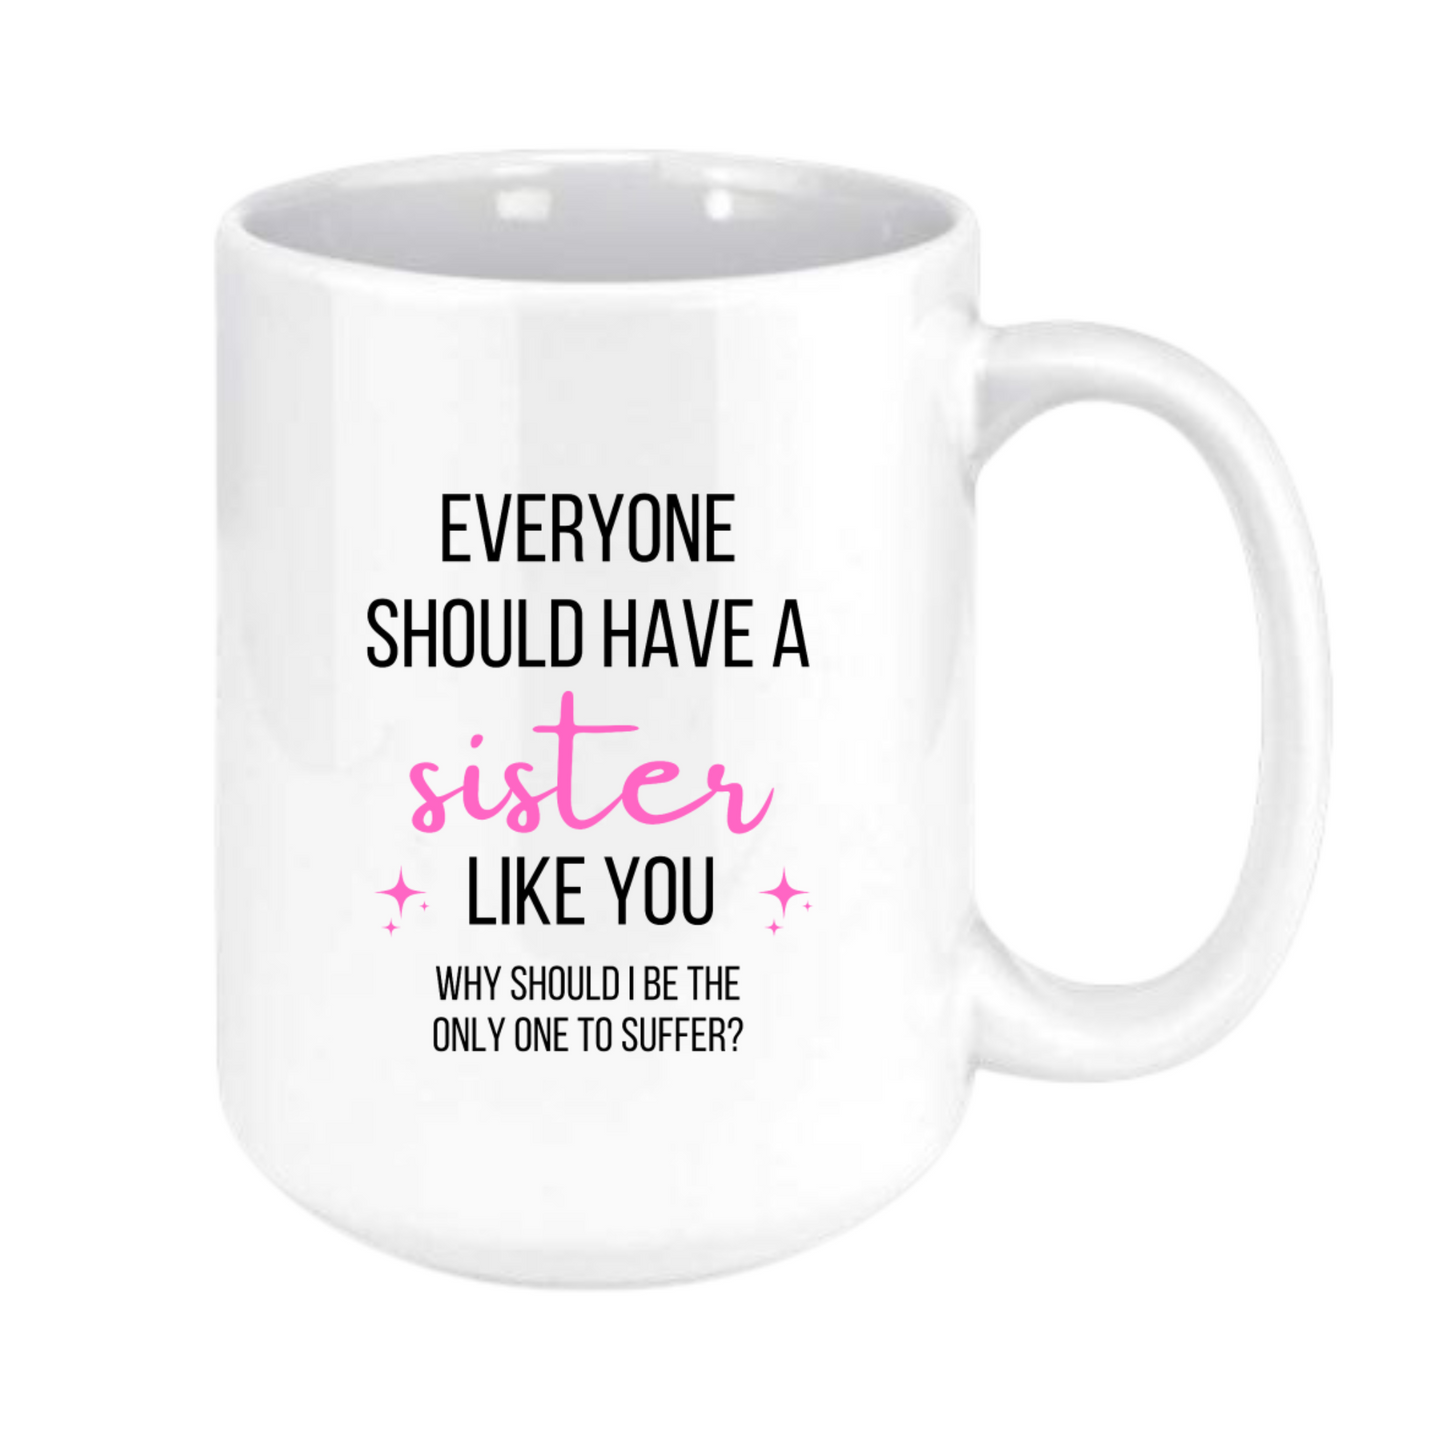 Everyone should have a sister mug